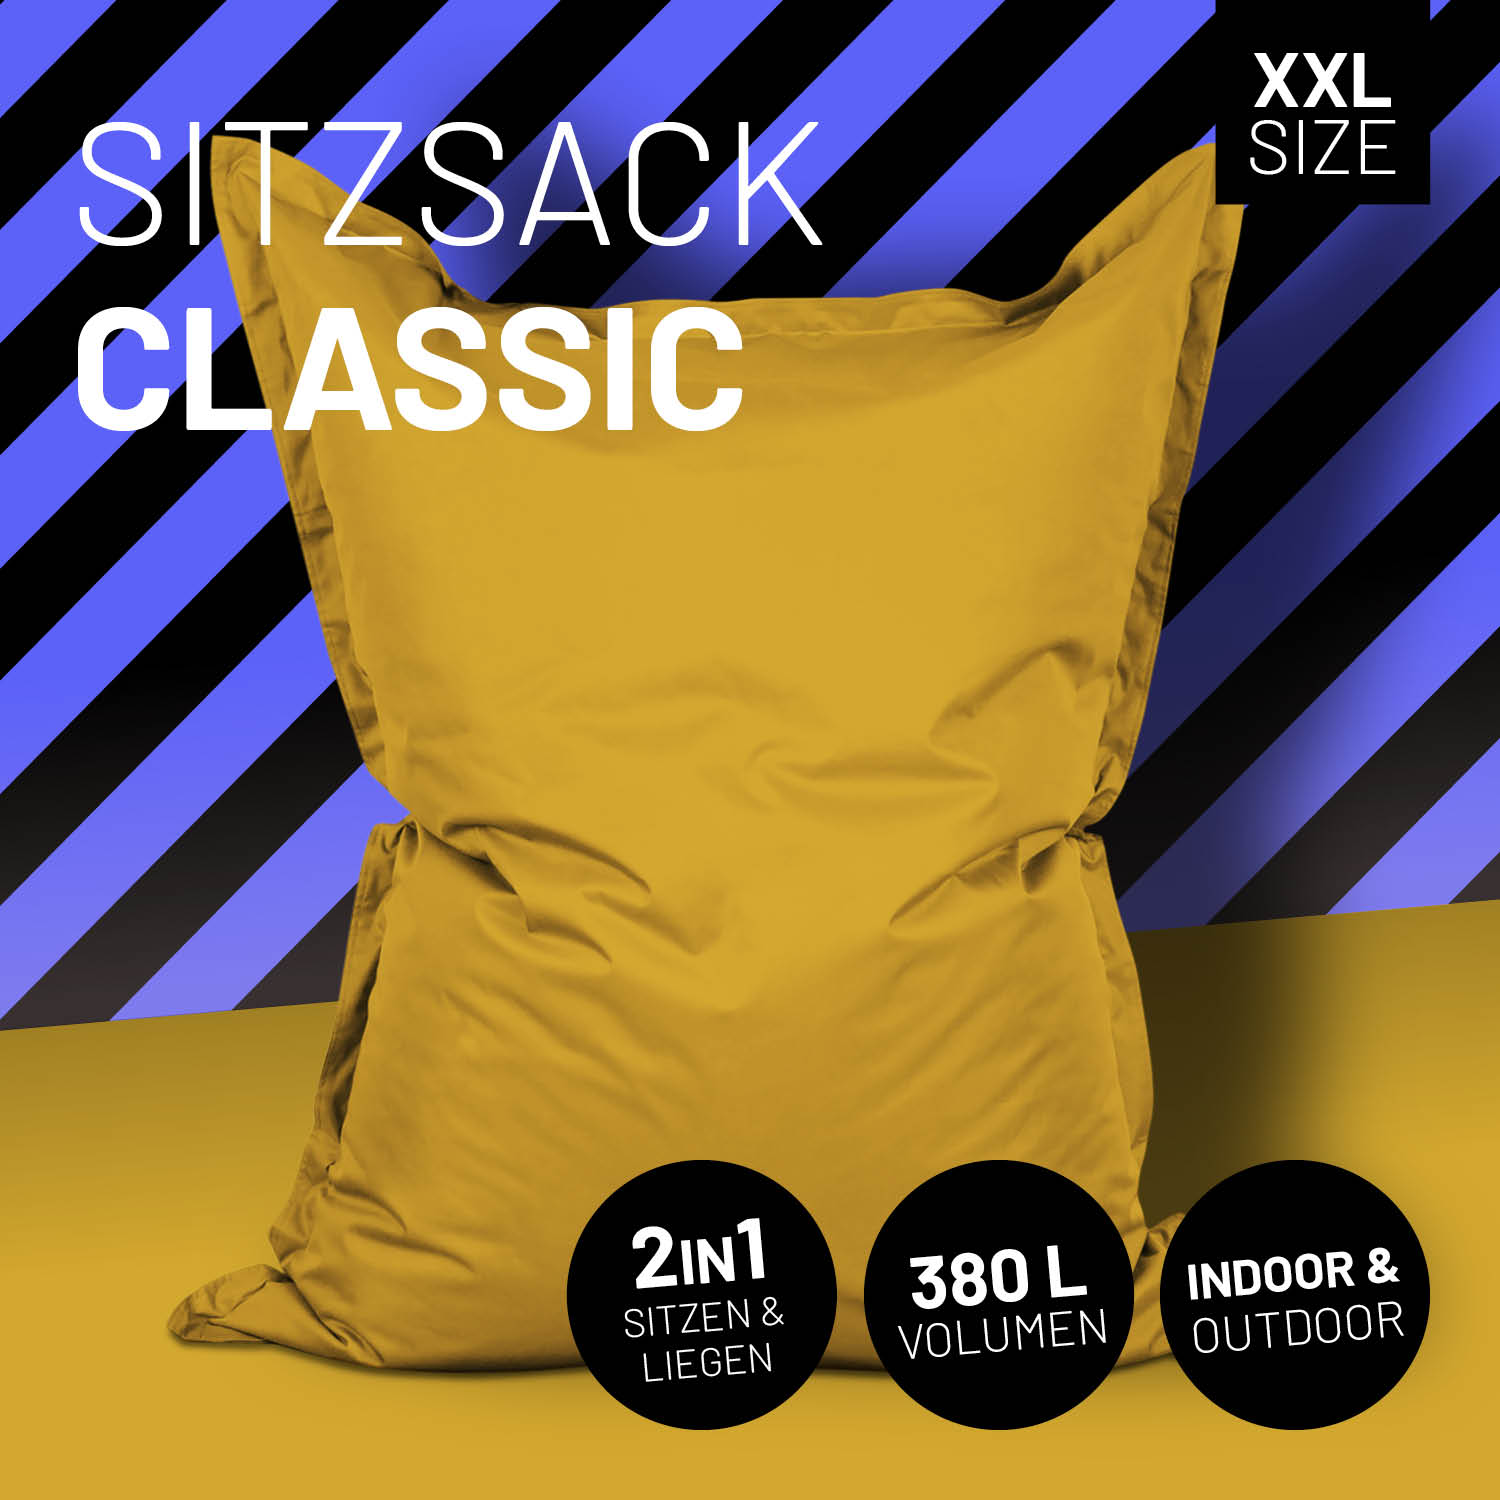 Sitzsack Classic XXL (380 L) - indoor & outdoor - Senfgelb